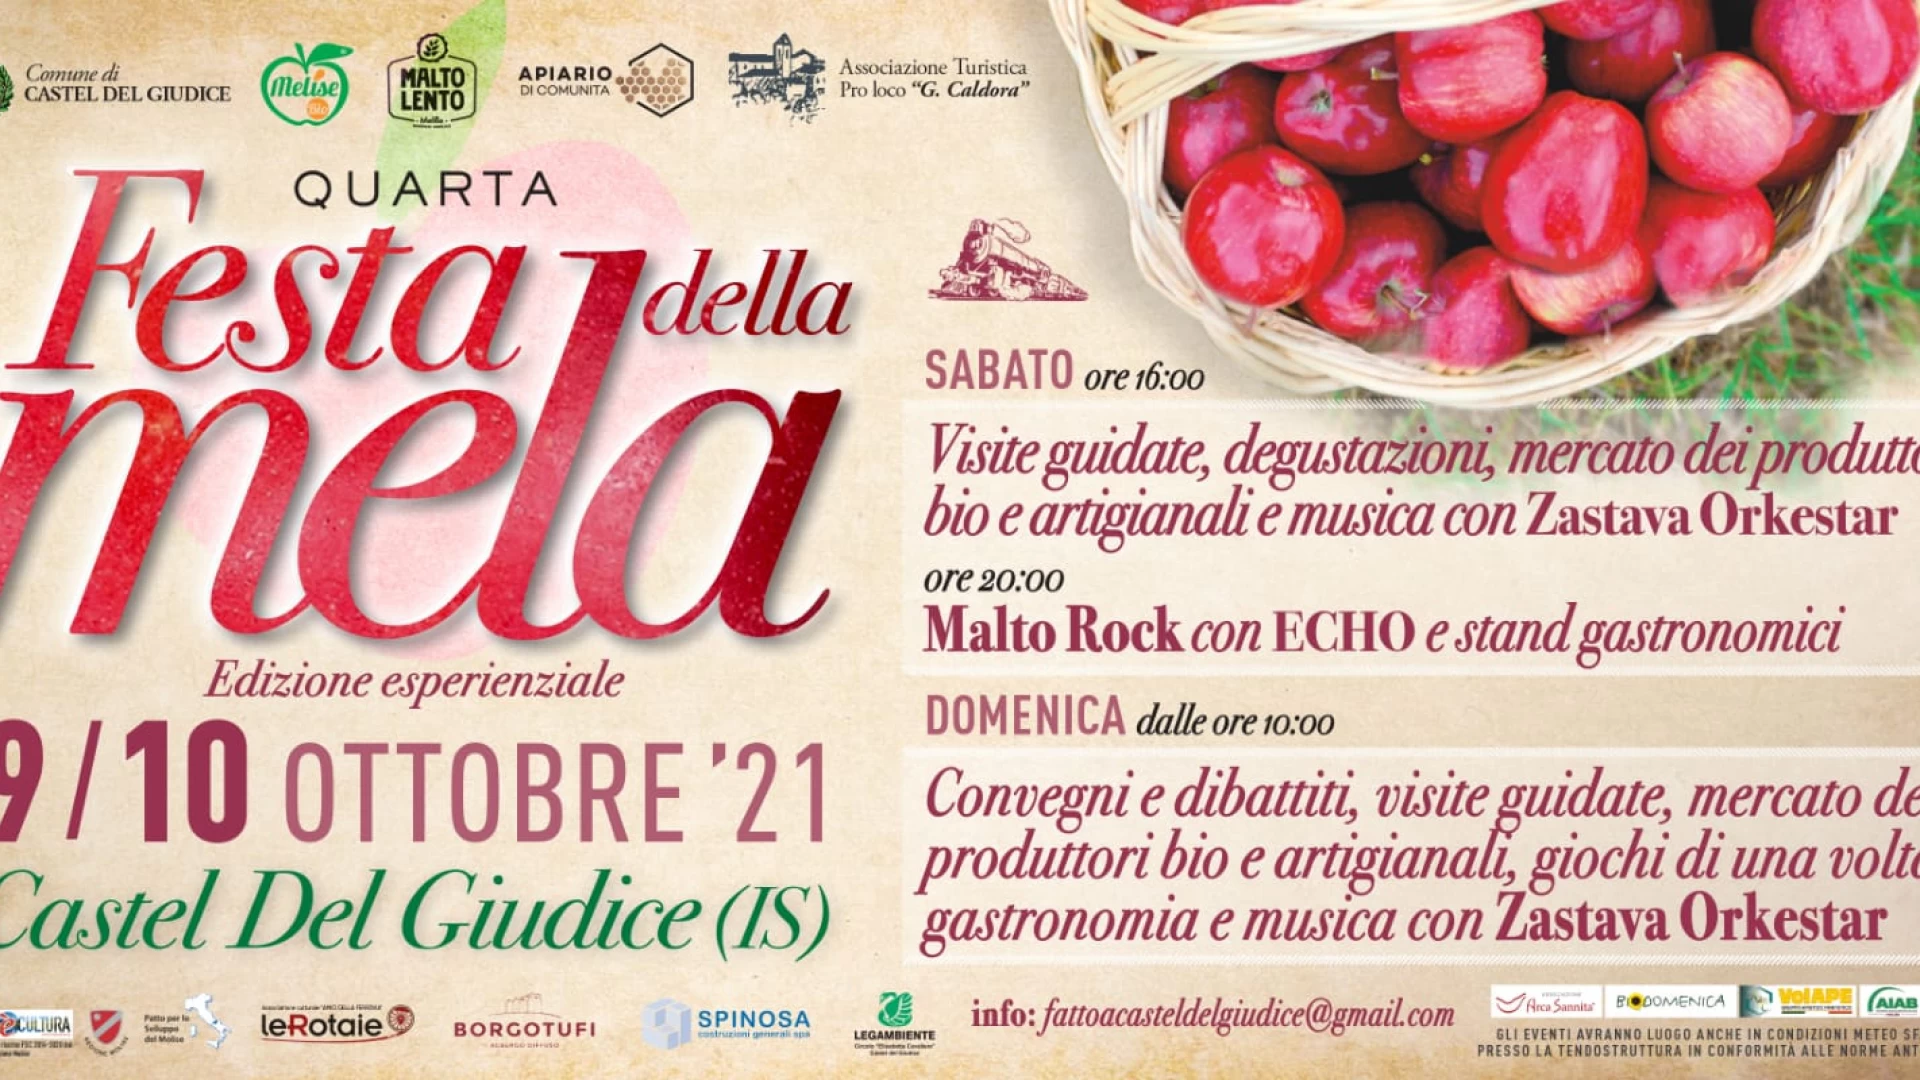 Castel Del Giudice: Festa della Mela – Edizione esperienziale